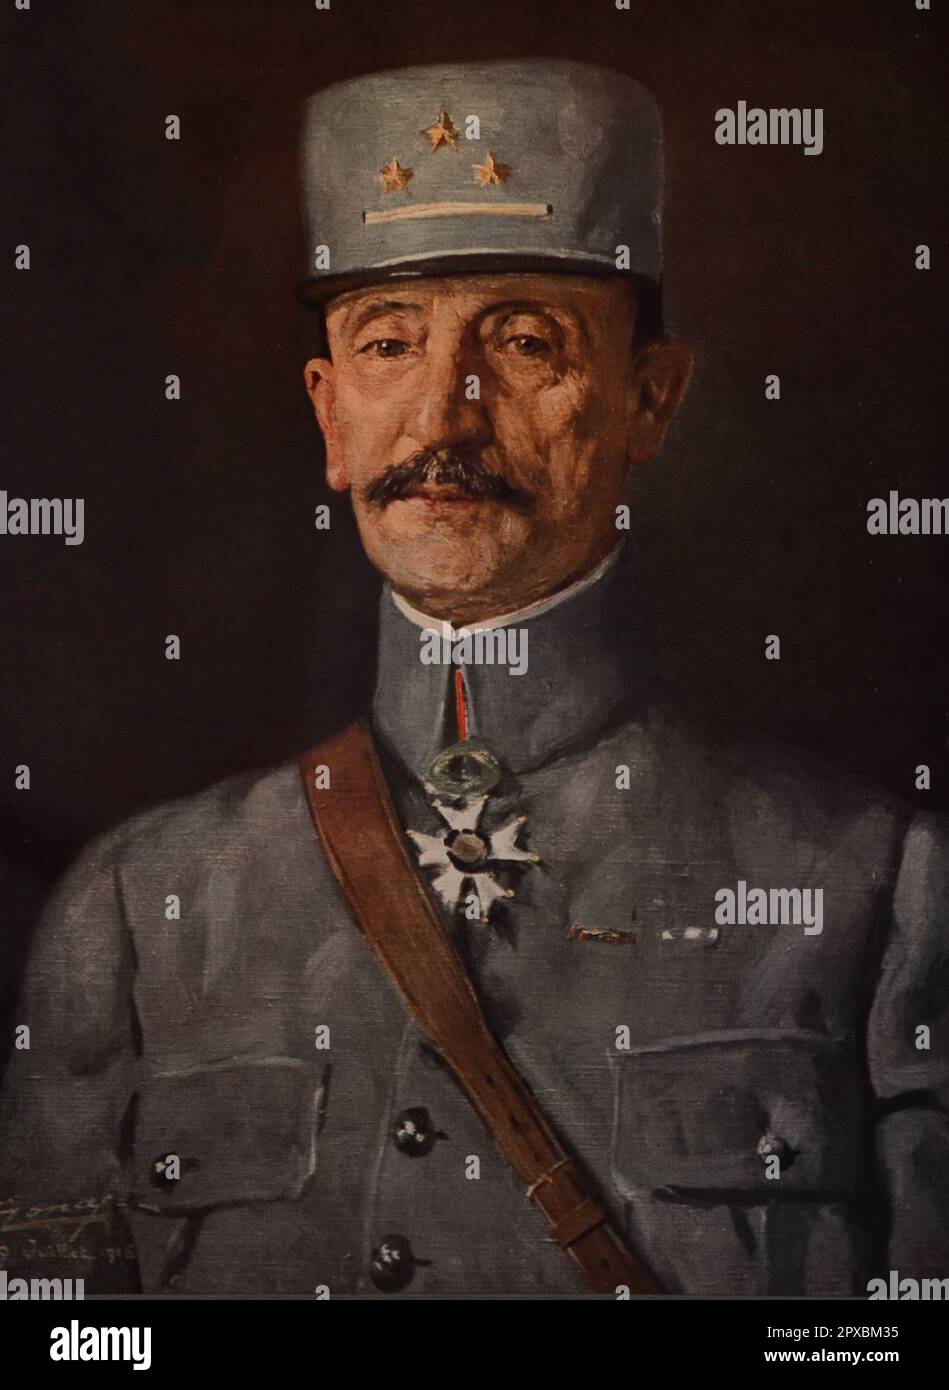 Erster Weltkrieg Französischer General Mazel. Olivier Charles Armand Adrien Mazel (1858-1940) war im Ersten Weltkrieg General der französischen Armee Er befehligte während des Krieges die erste (25. März 1916 bis 31. März 1916) und die fünfte Armee (31. März 1916 bis 22. Mai 1917). Stockfoto